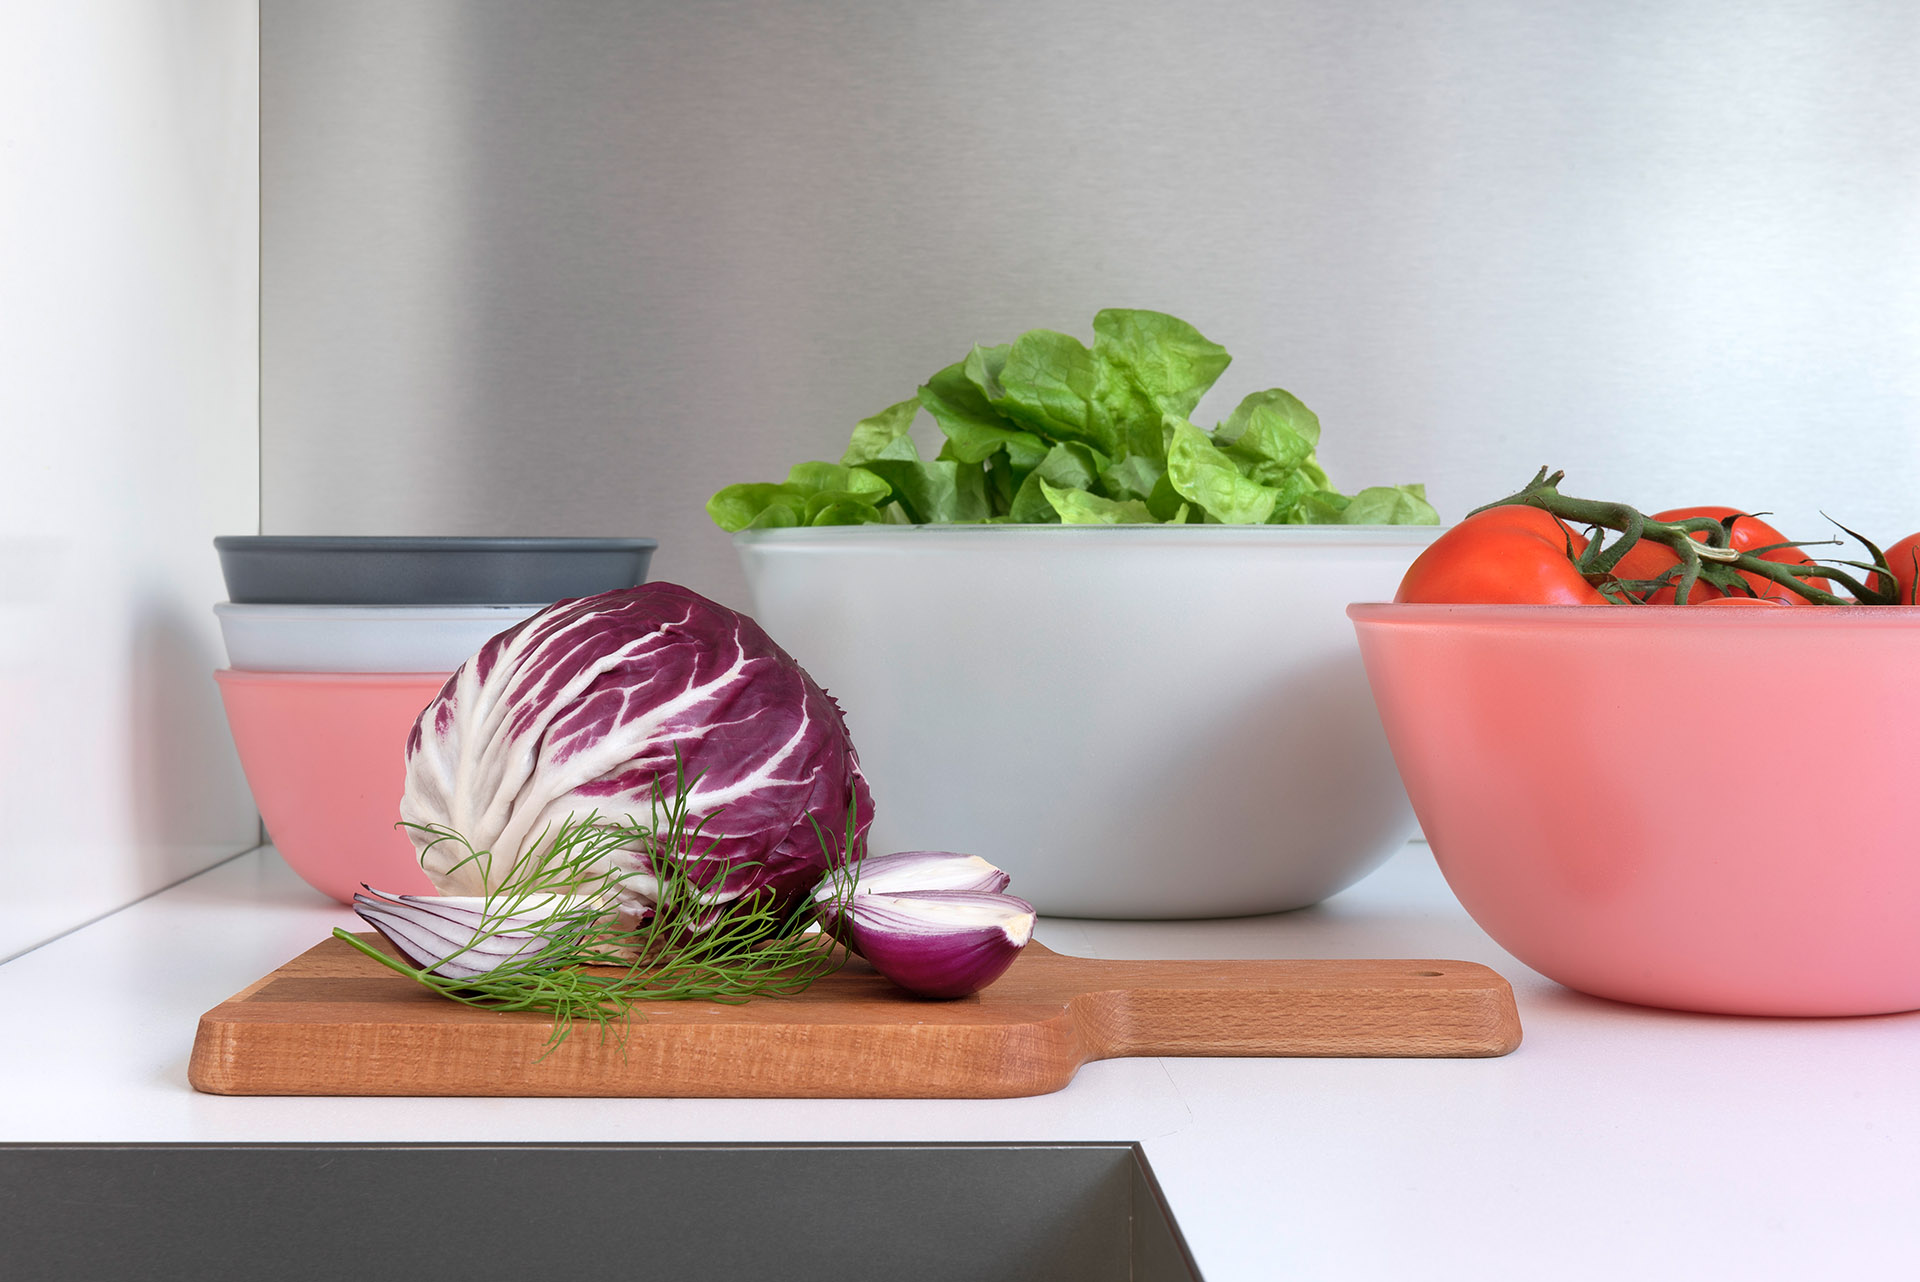 Werbefotografie Studio Oberfranken Große und kleine Schüsseln der Serie Play of Colors mit Salaten und Tomaten. Feigefotodesign